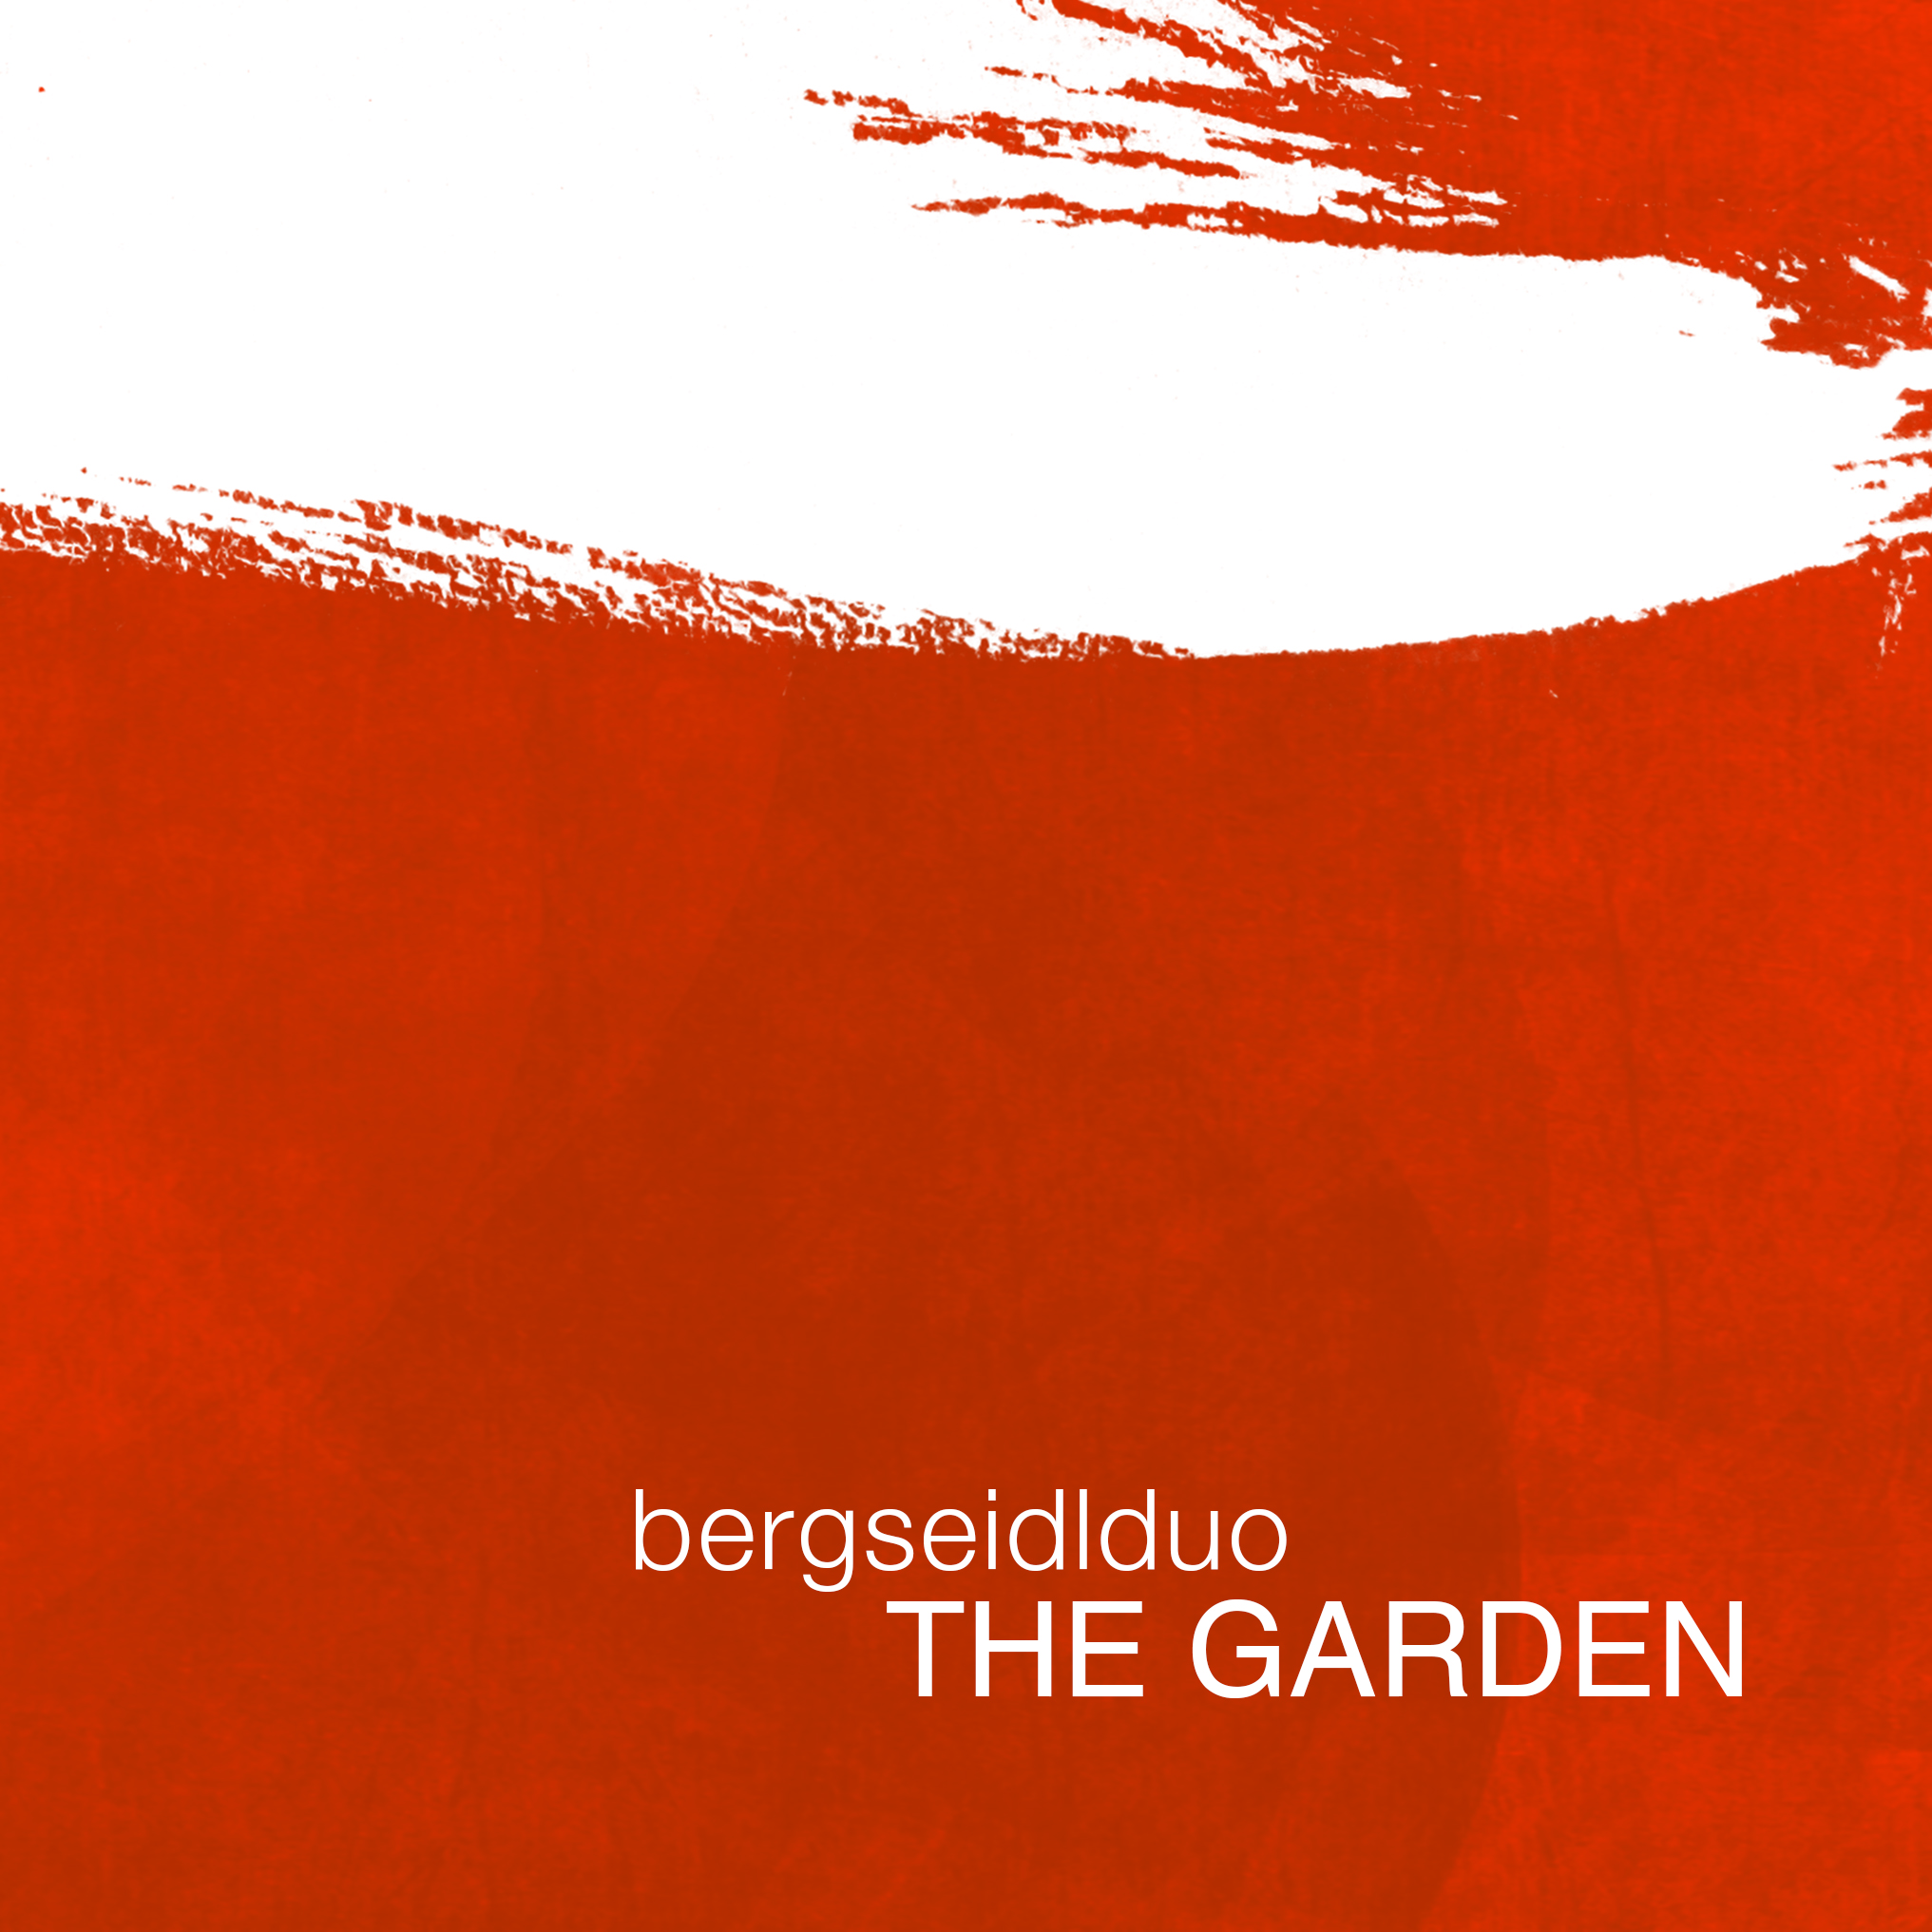 Bild von der CD bergseidlduo - The Garden